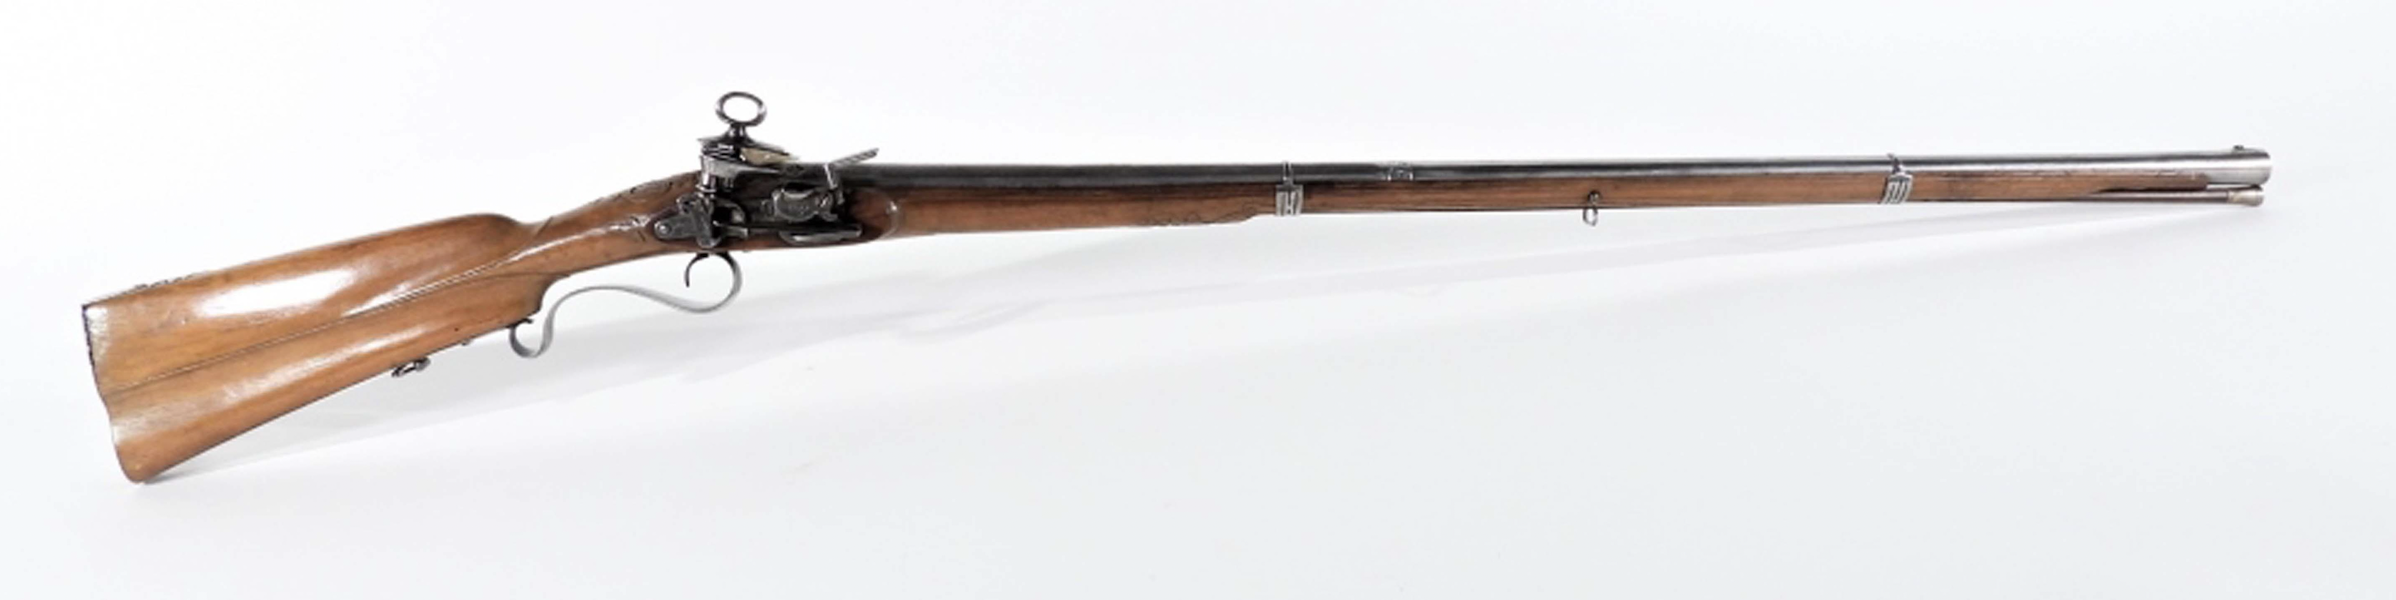 Circa-1760 Spanish Miquelet musket fusil, estimated at $2,000-$3,000